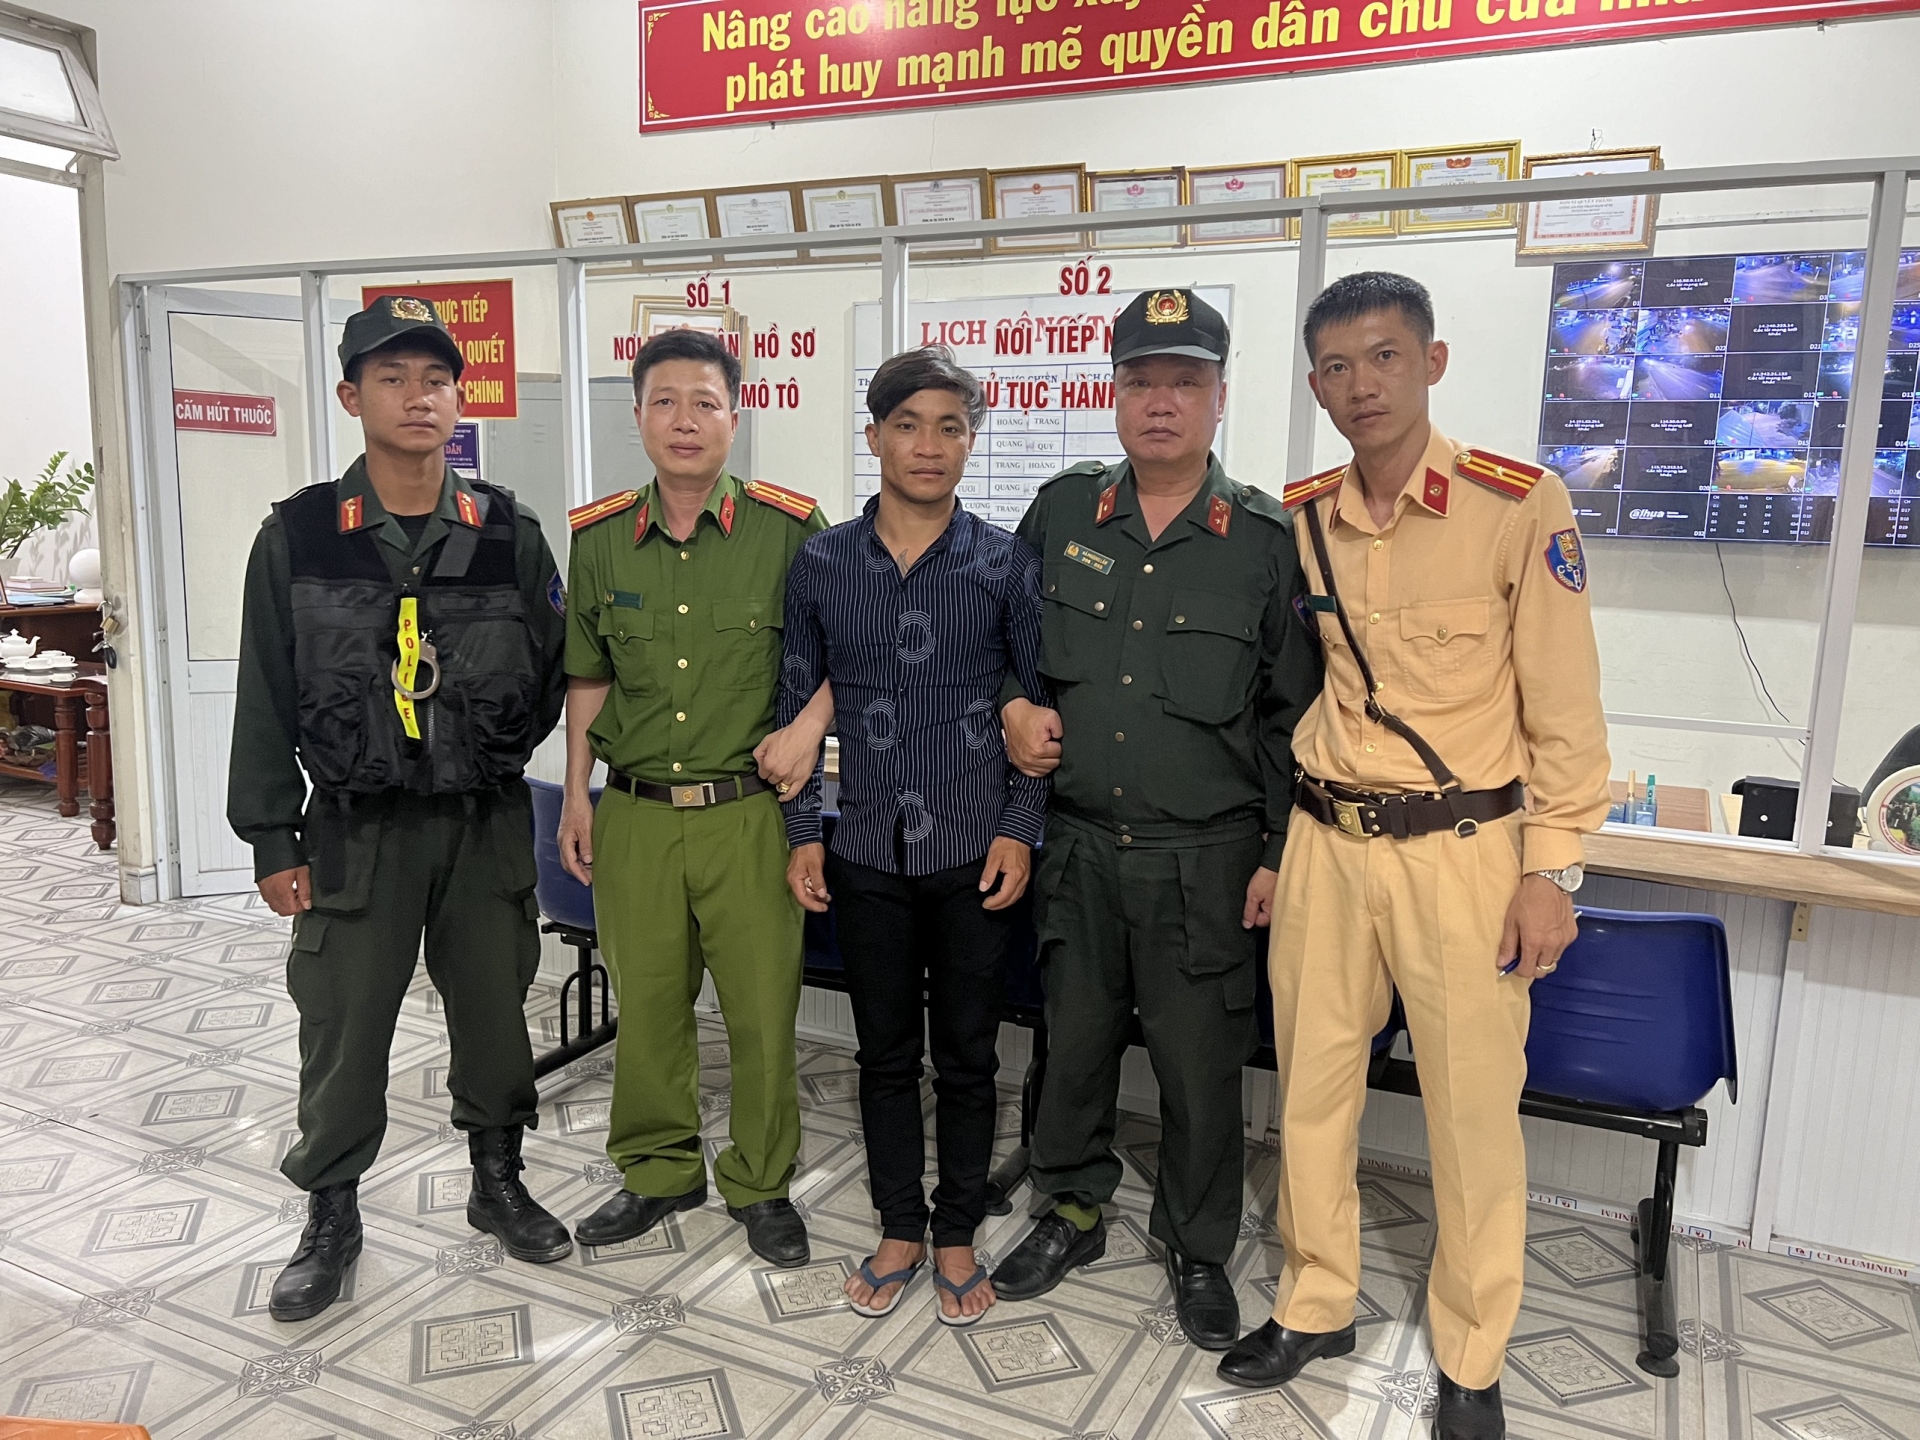 Đối tượng người Campu chia trộm cắp xe máy ở Đà Lạt bị bắt giữ khi đang trên đường trốn về TP Hồ Chí Minh